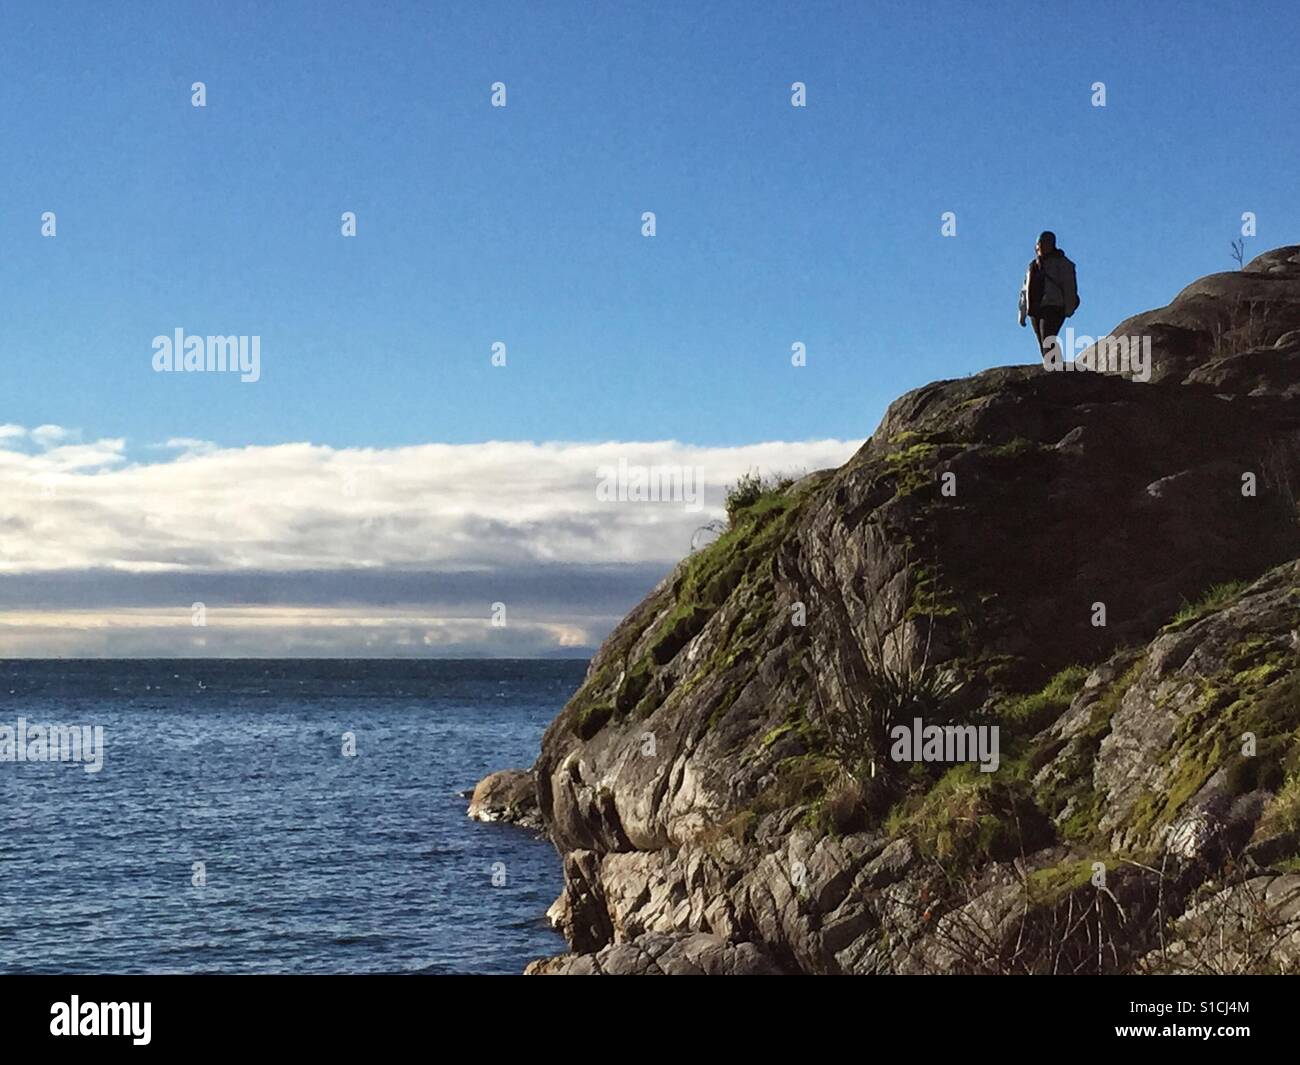 Personne solitaire à la limite sur une falaise près de la mer, regardant le paysage marin. Banque D'Images